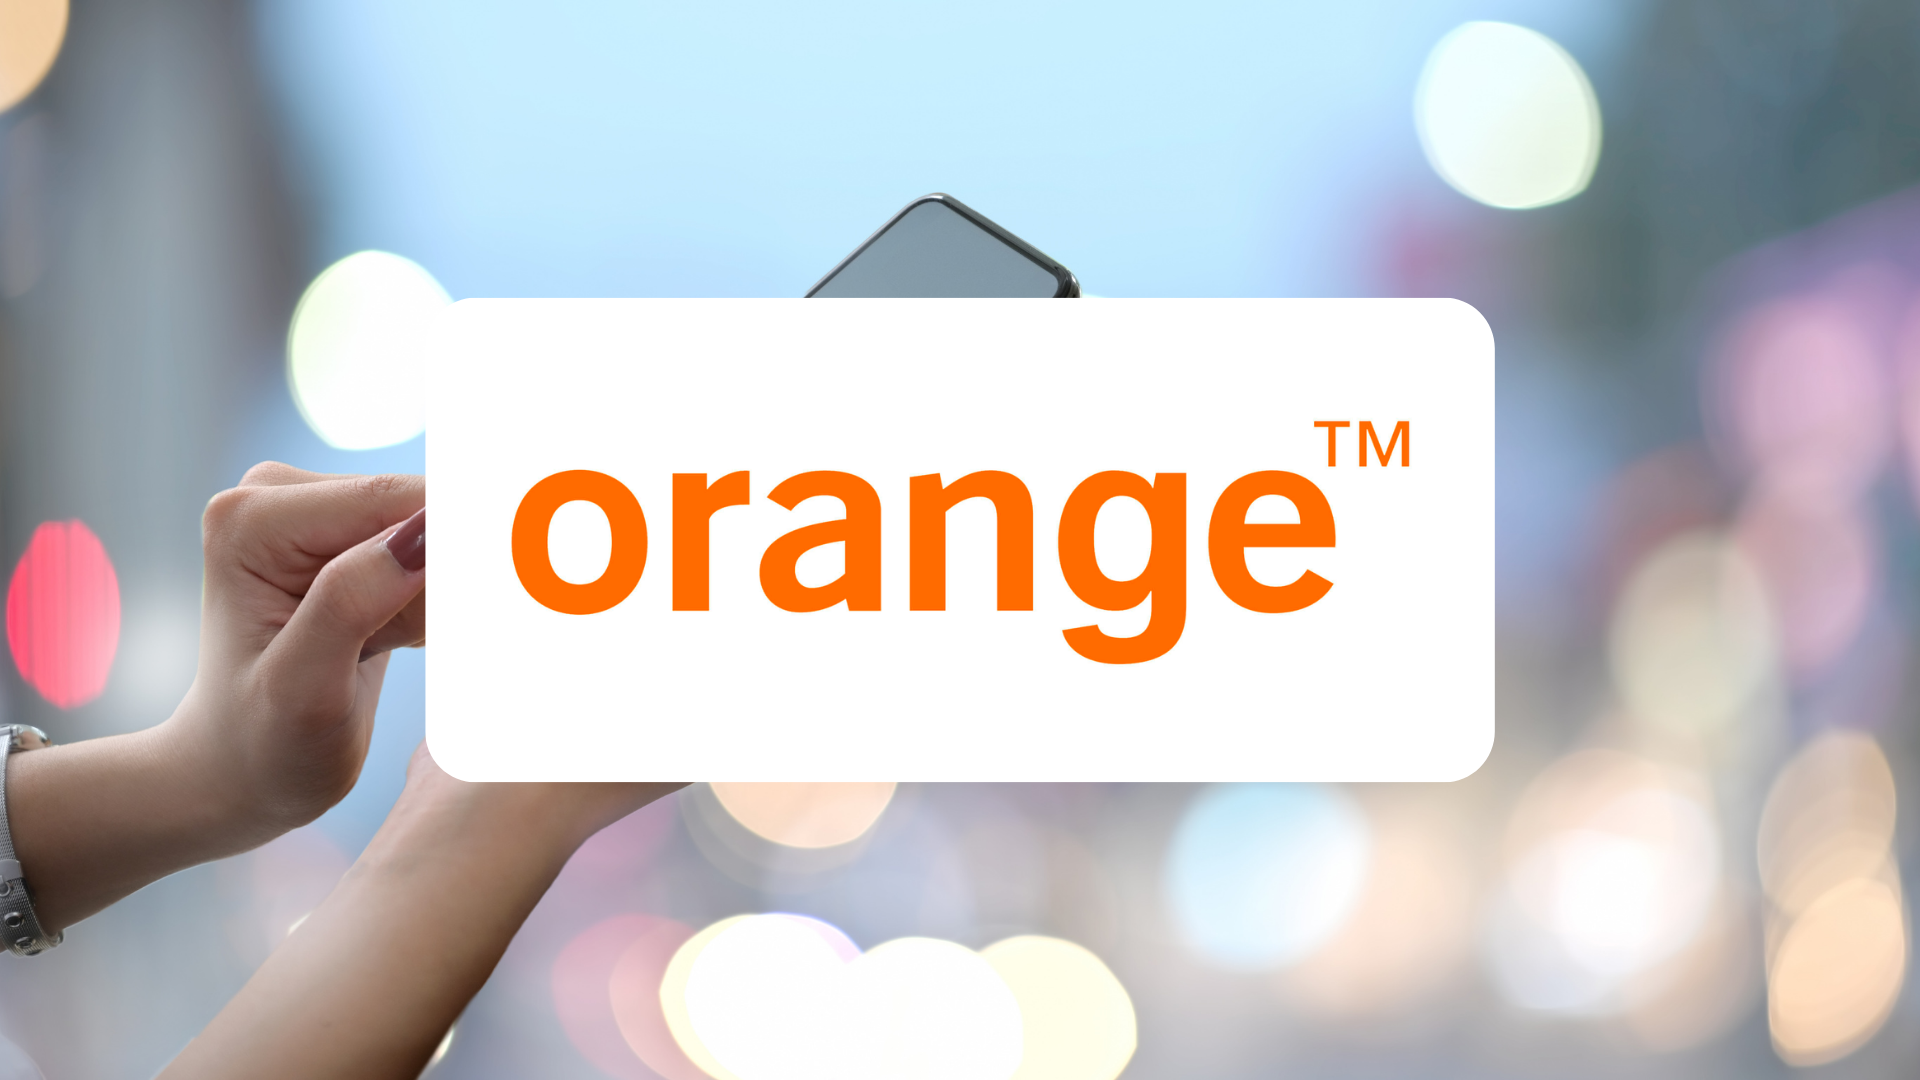 Highlighting Orange's 5G network